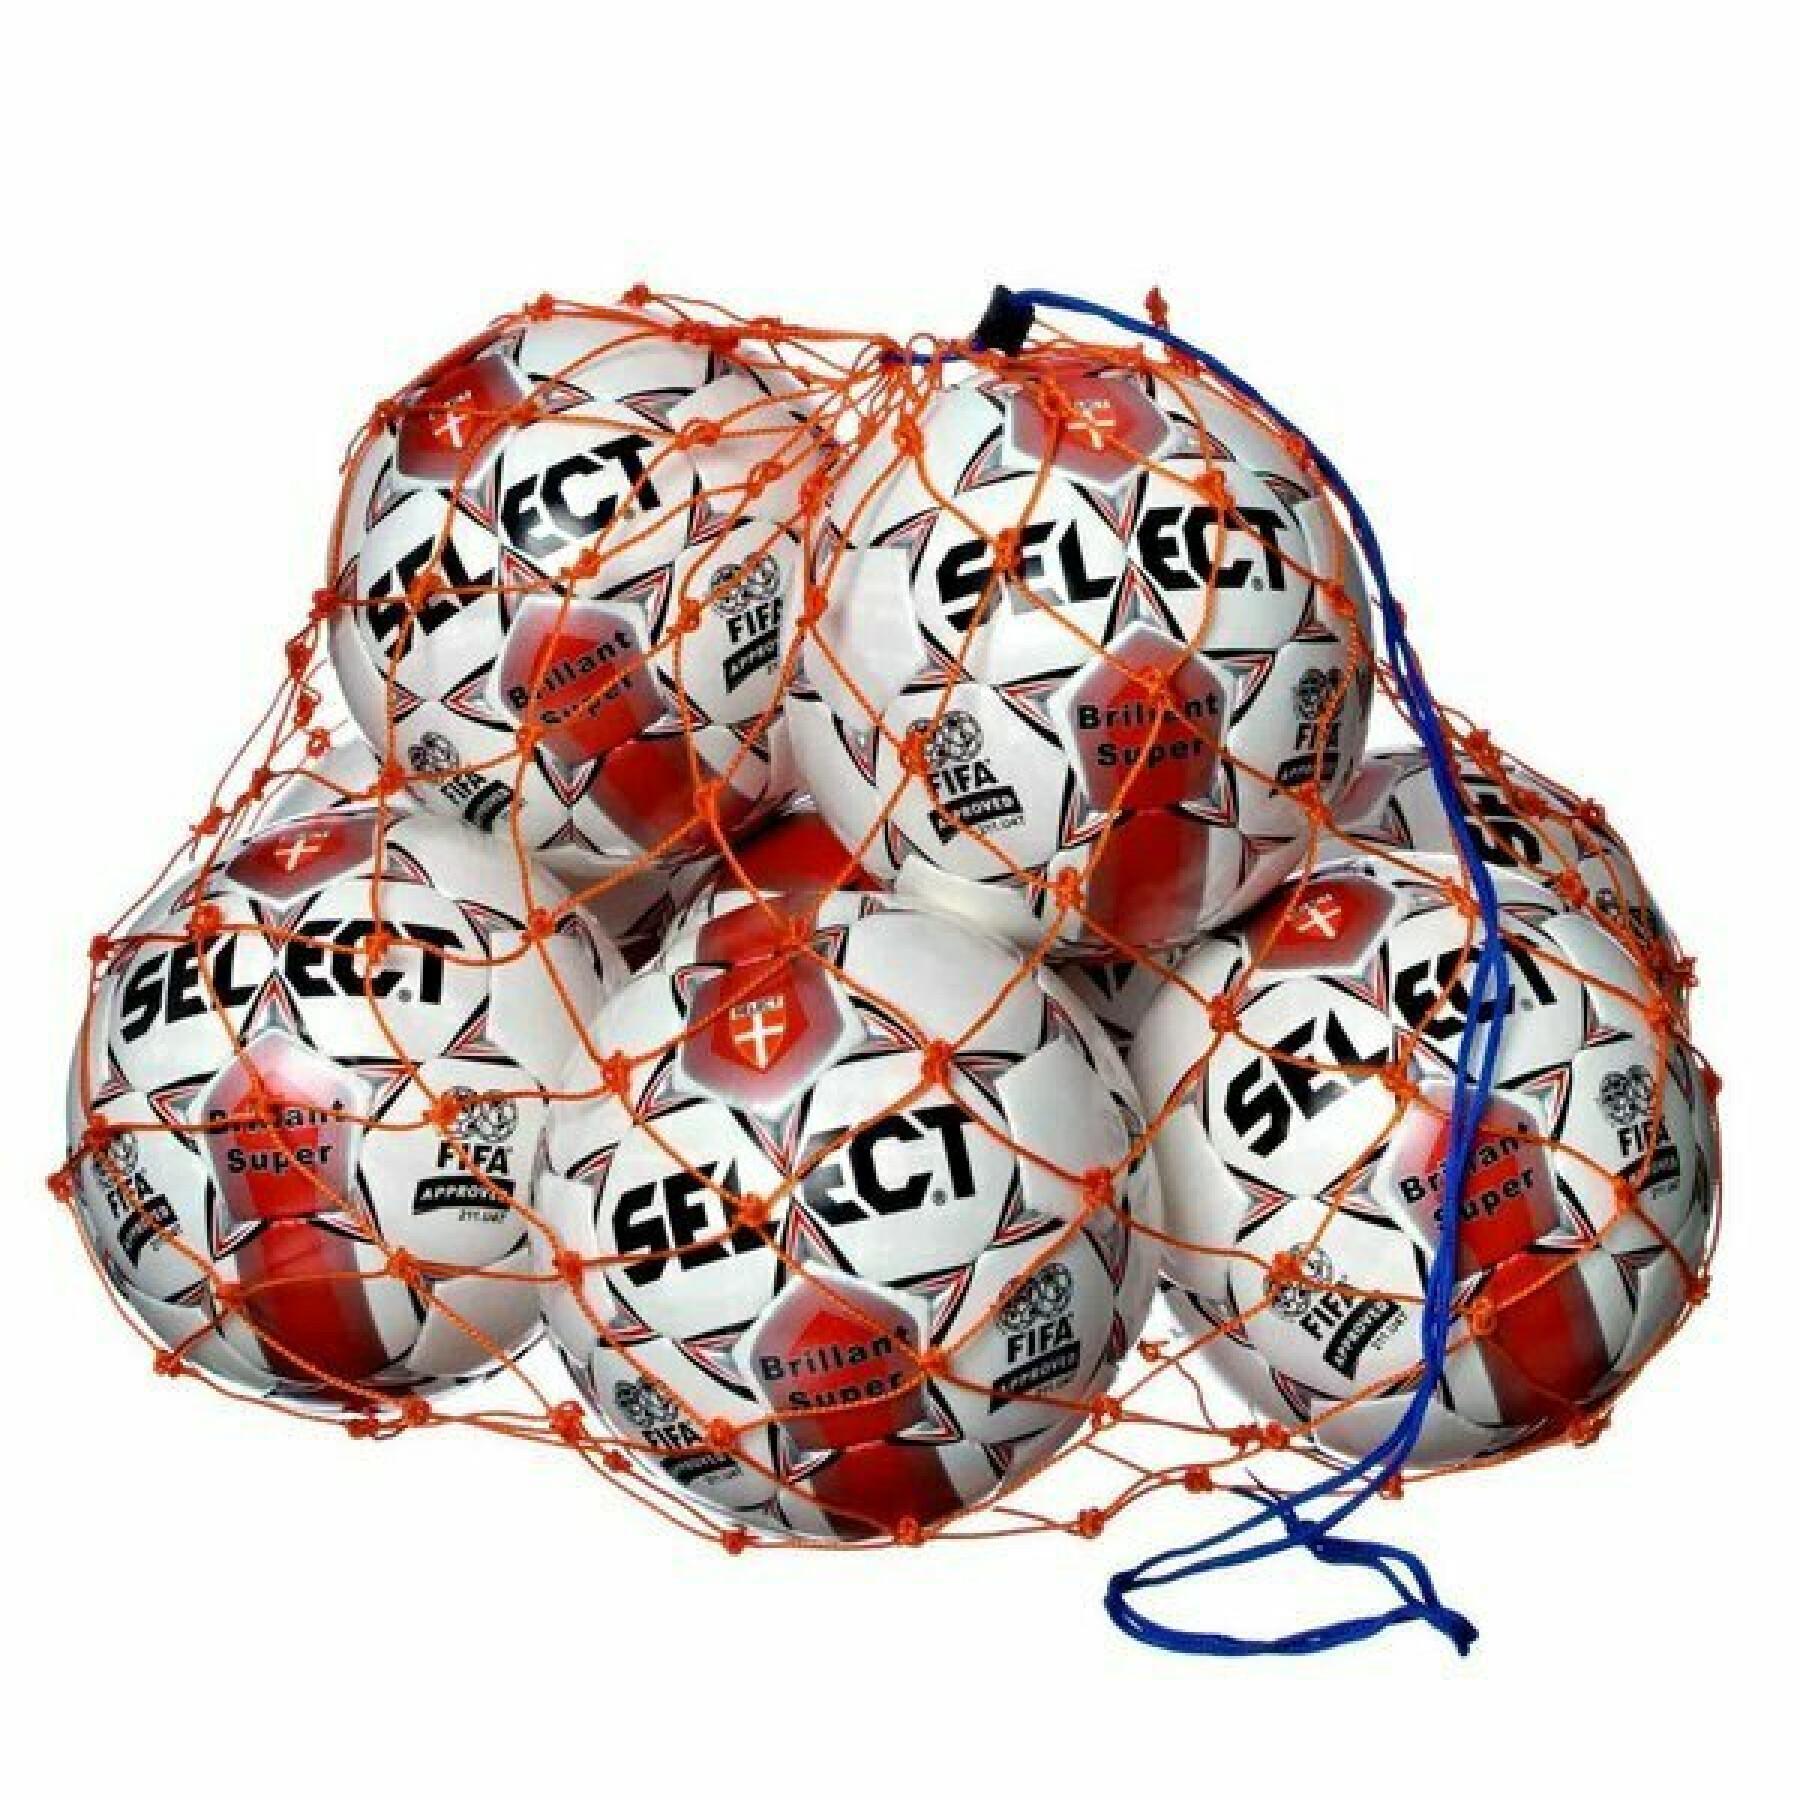 Rede balão Select / 14 - 16 ballons